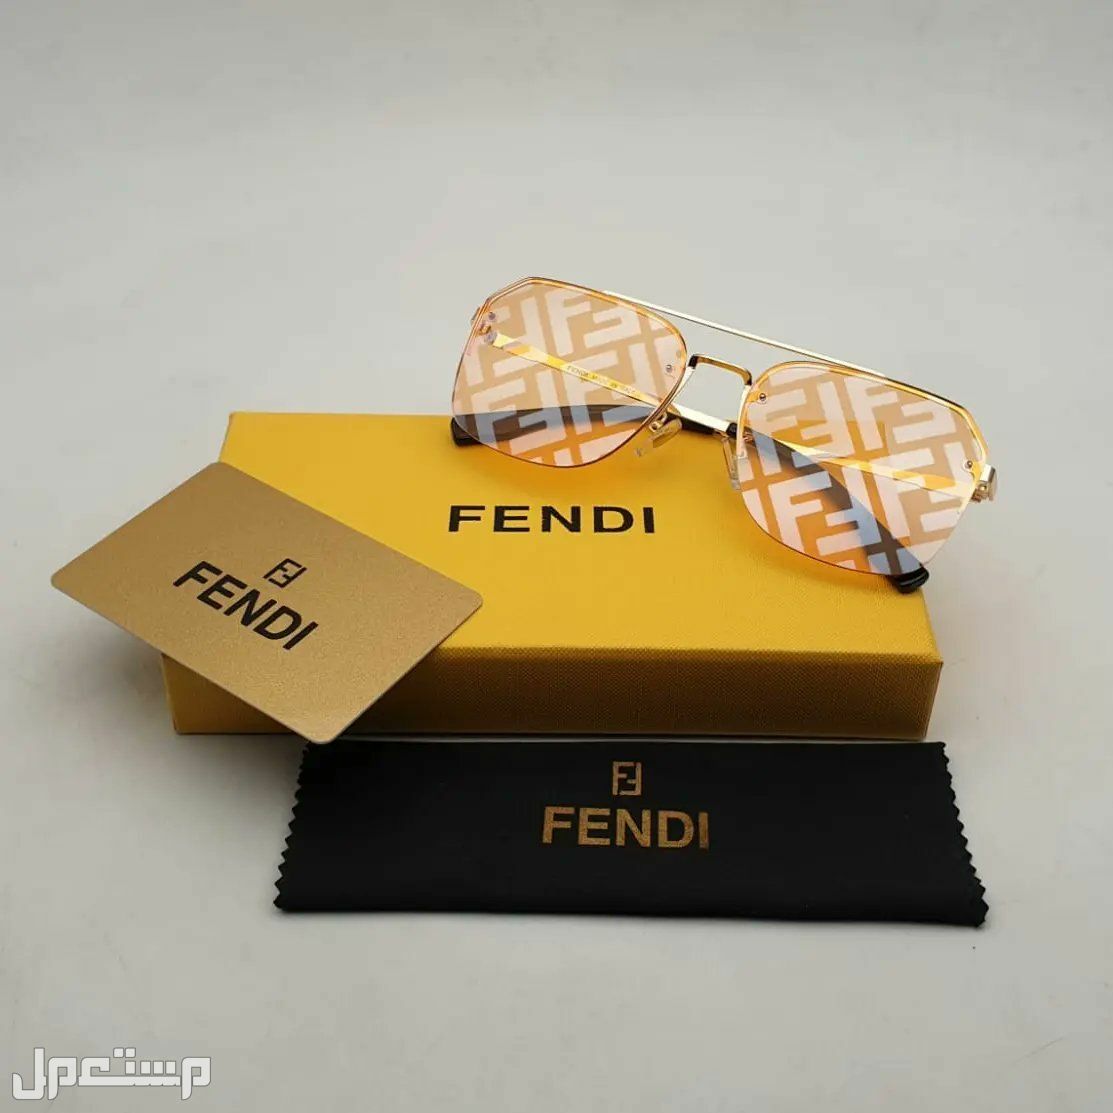 نظارات فندي Fendi النسائية تعرف على مواصفاتها وأسعارها كاملة في البحرين فندي مميزة